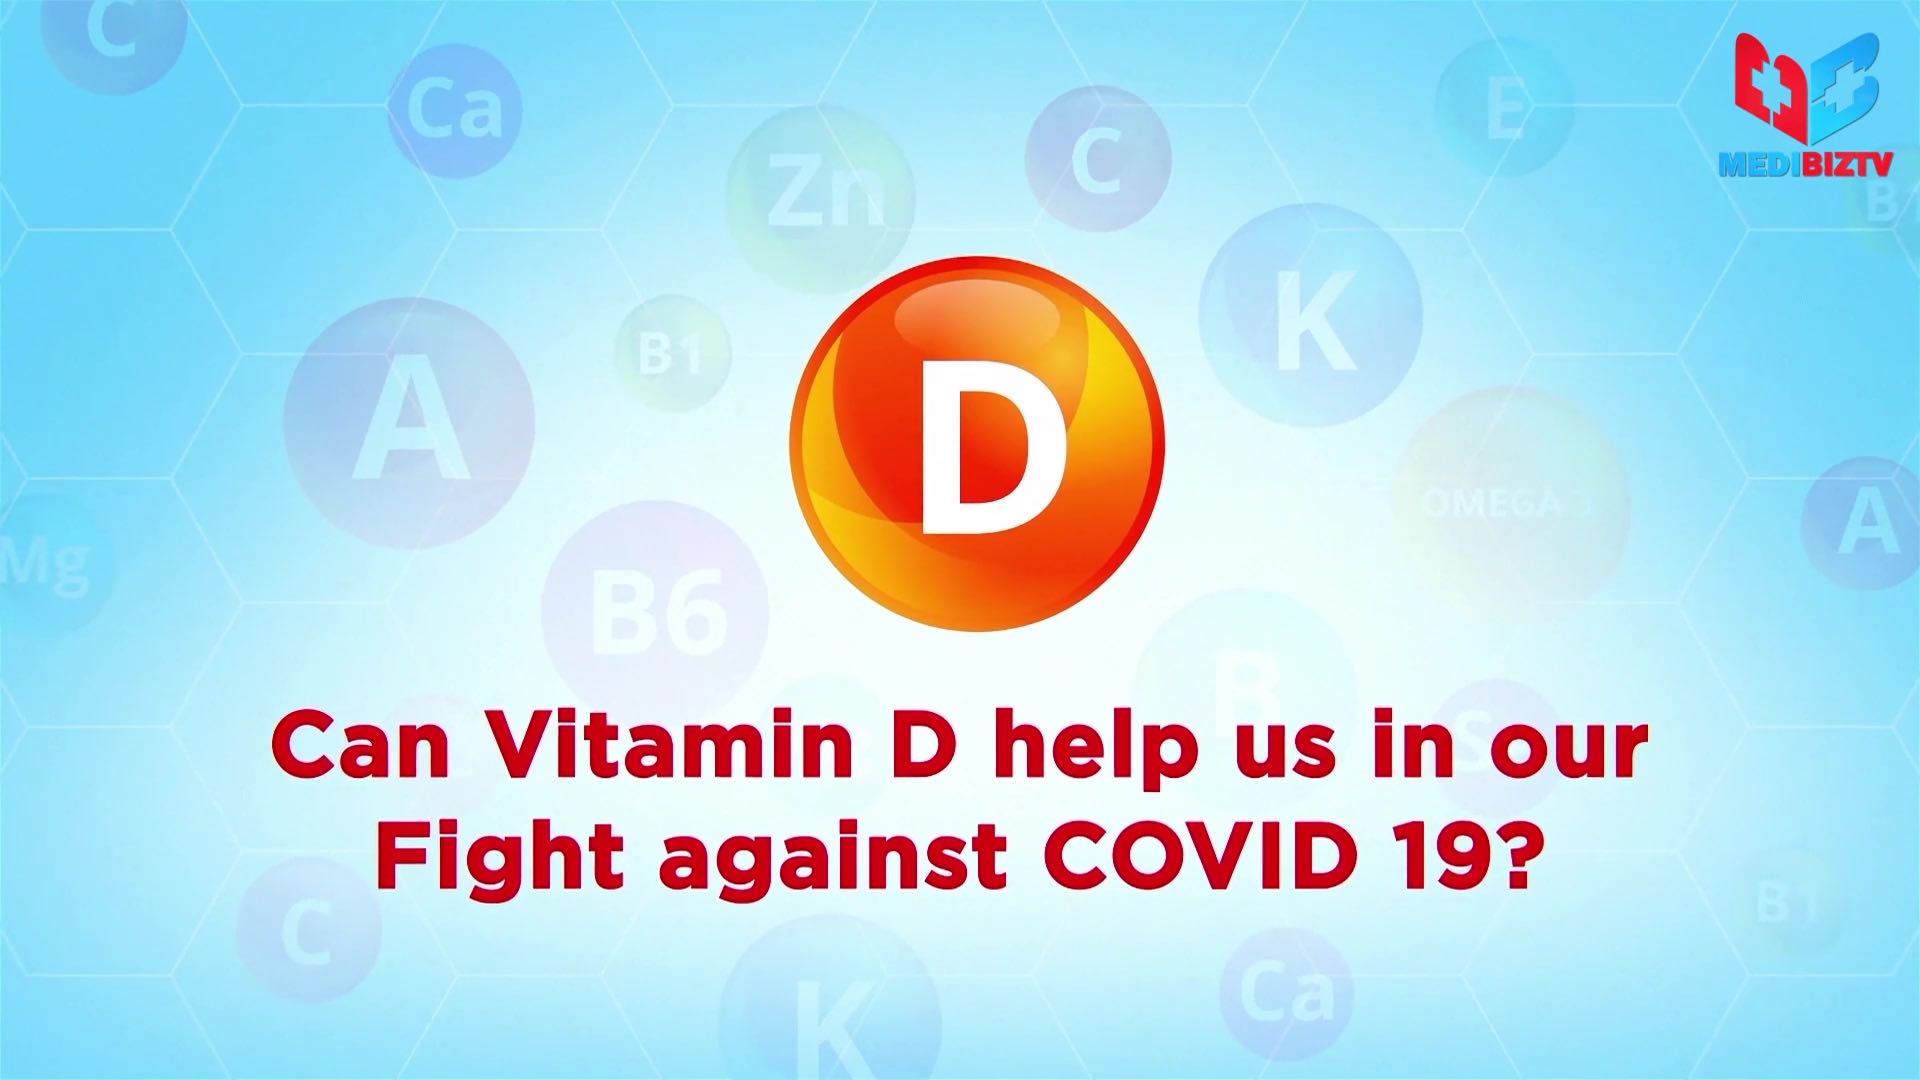 COVID-19 and Vitamin D